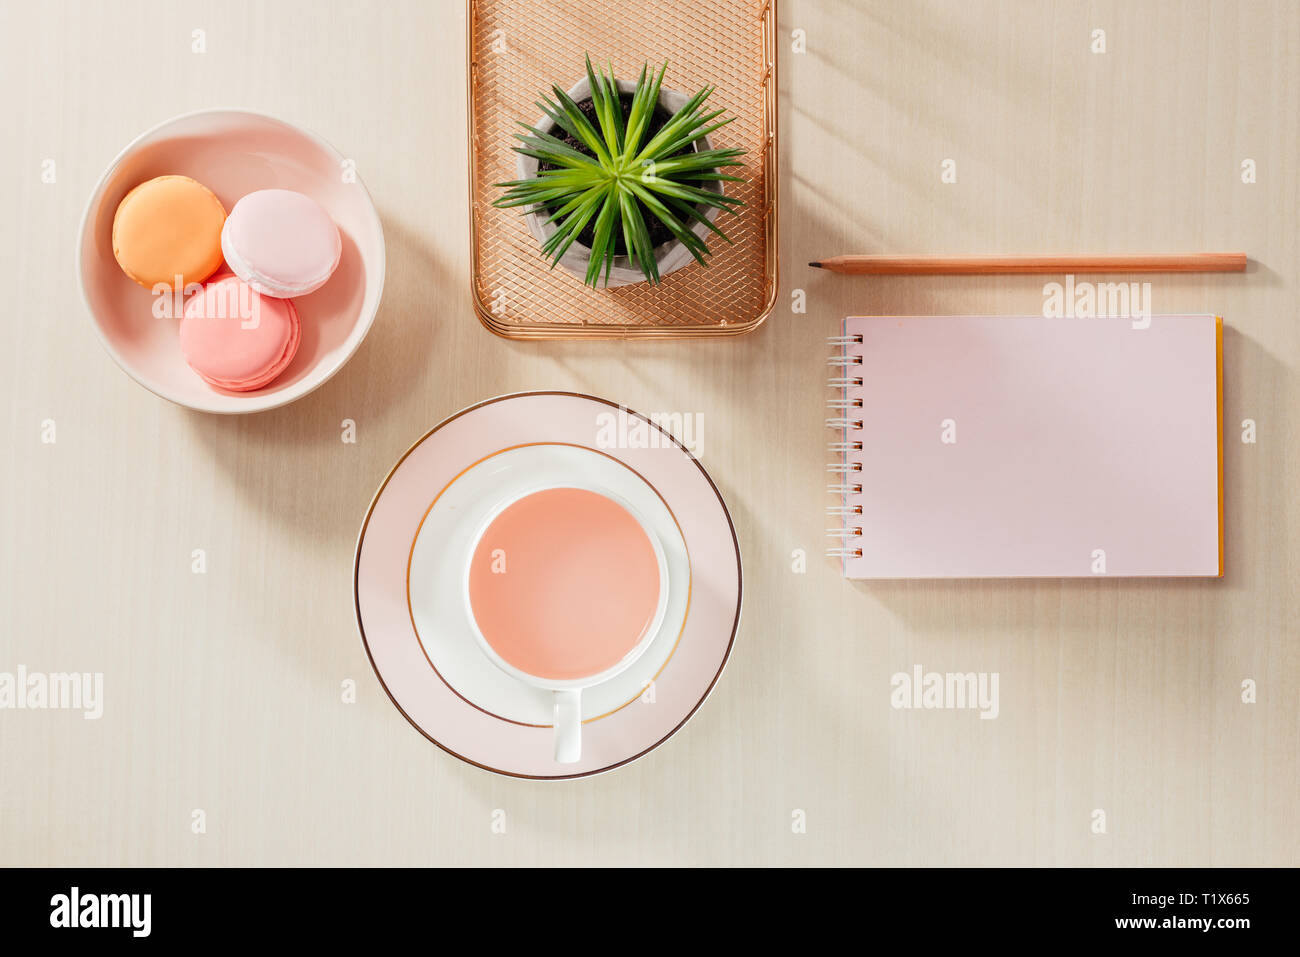 El estilo de fotografía de stock mesa de oficina de color beige con blanco, macaroon portátil, suministros y taza de café Foto de stock